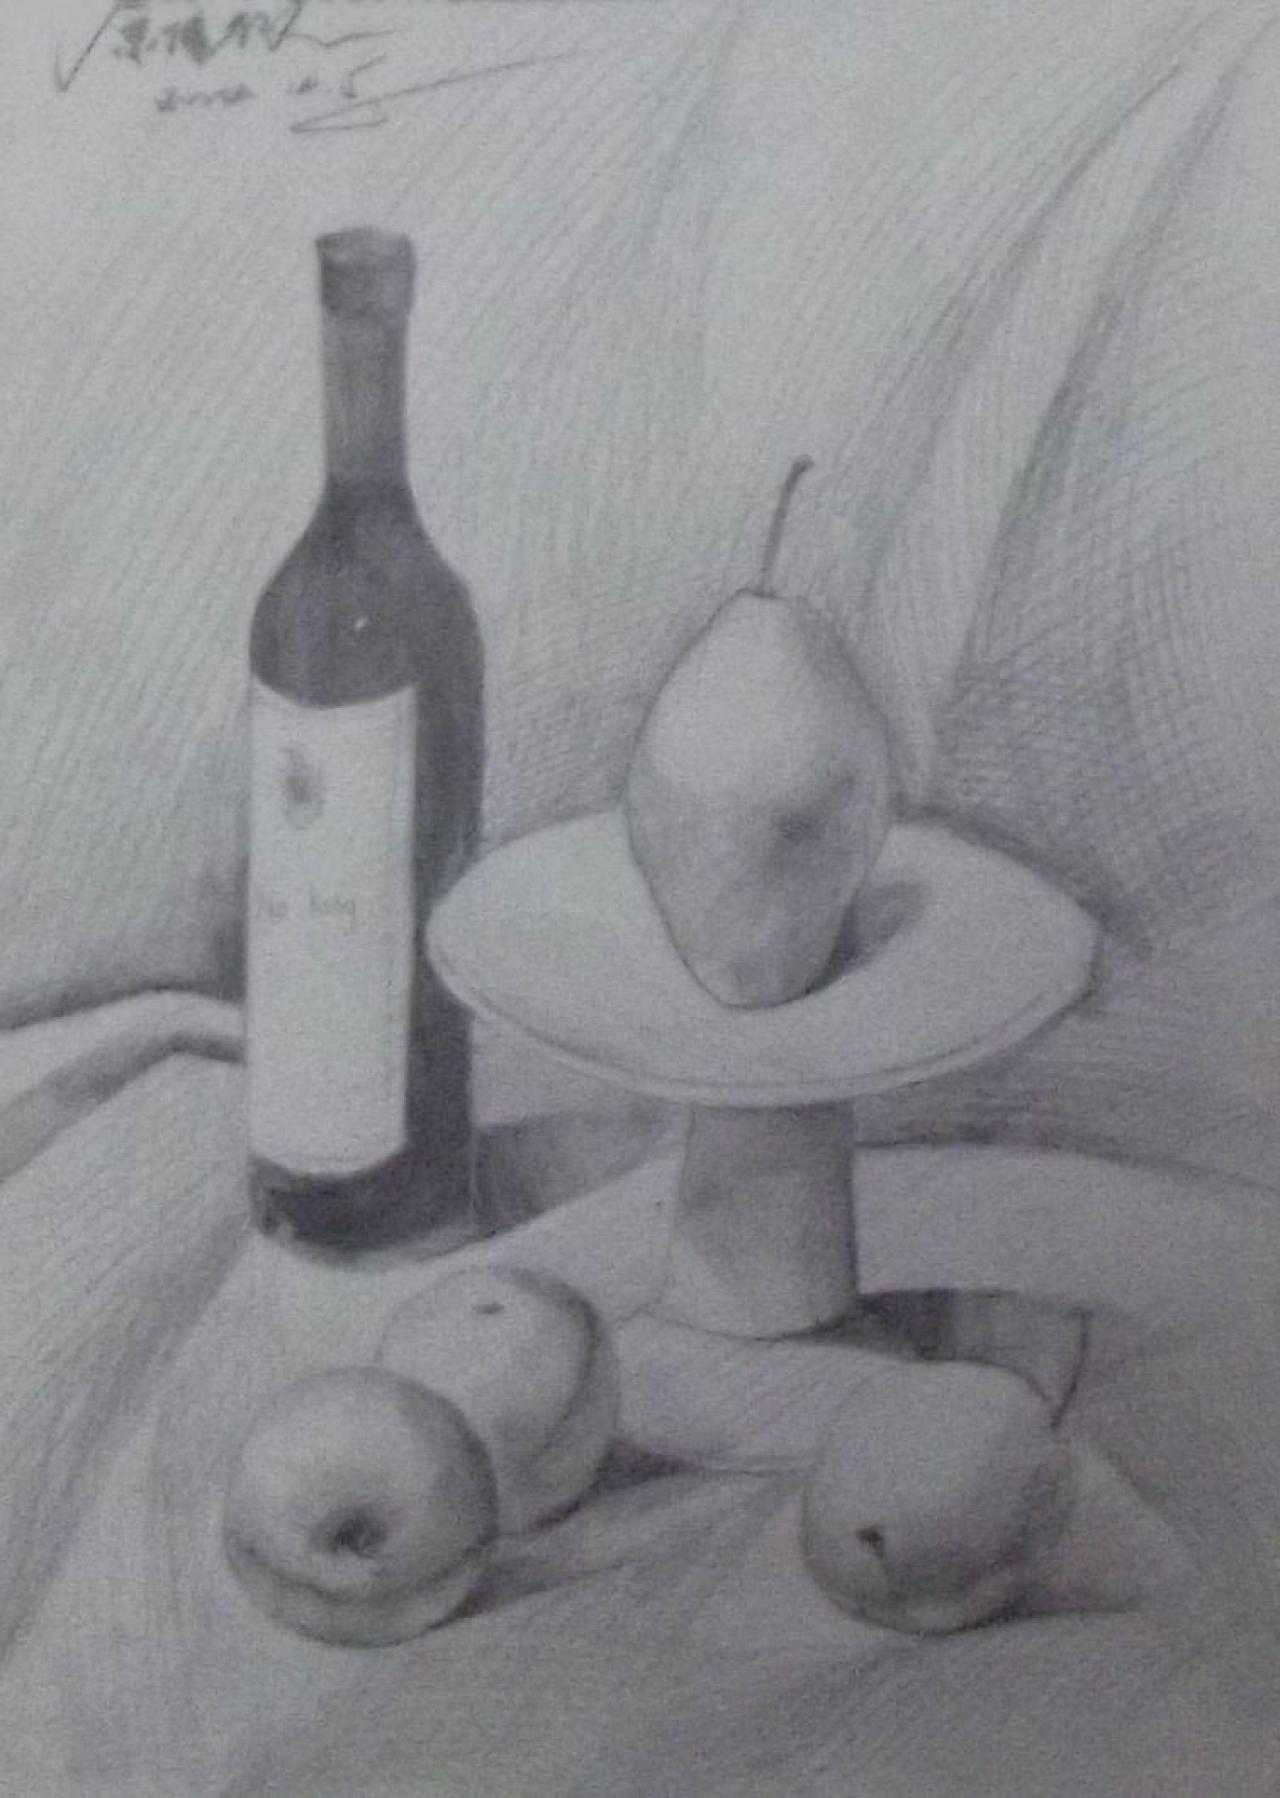 果盘、梨、酒瓶等静物素描 原佳仪画